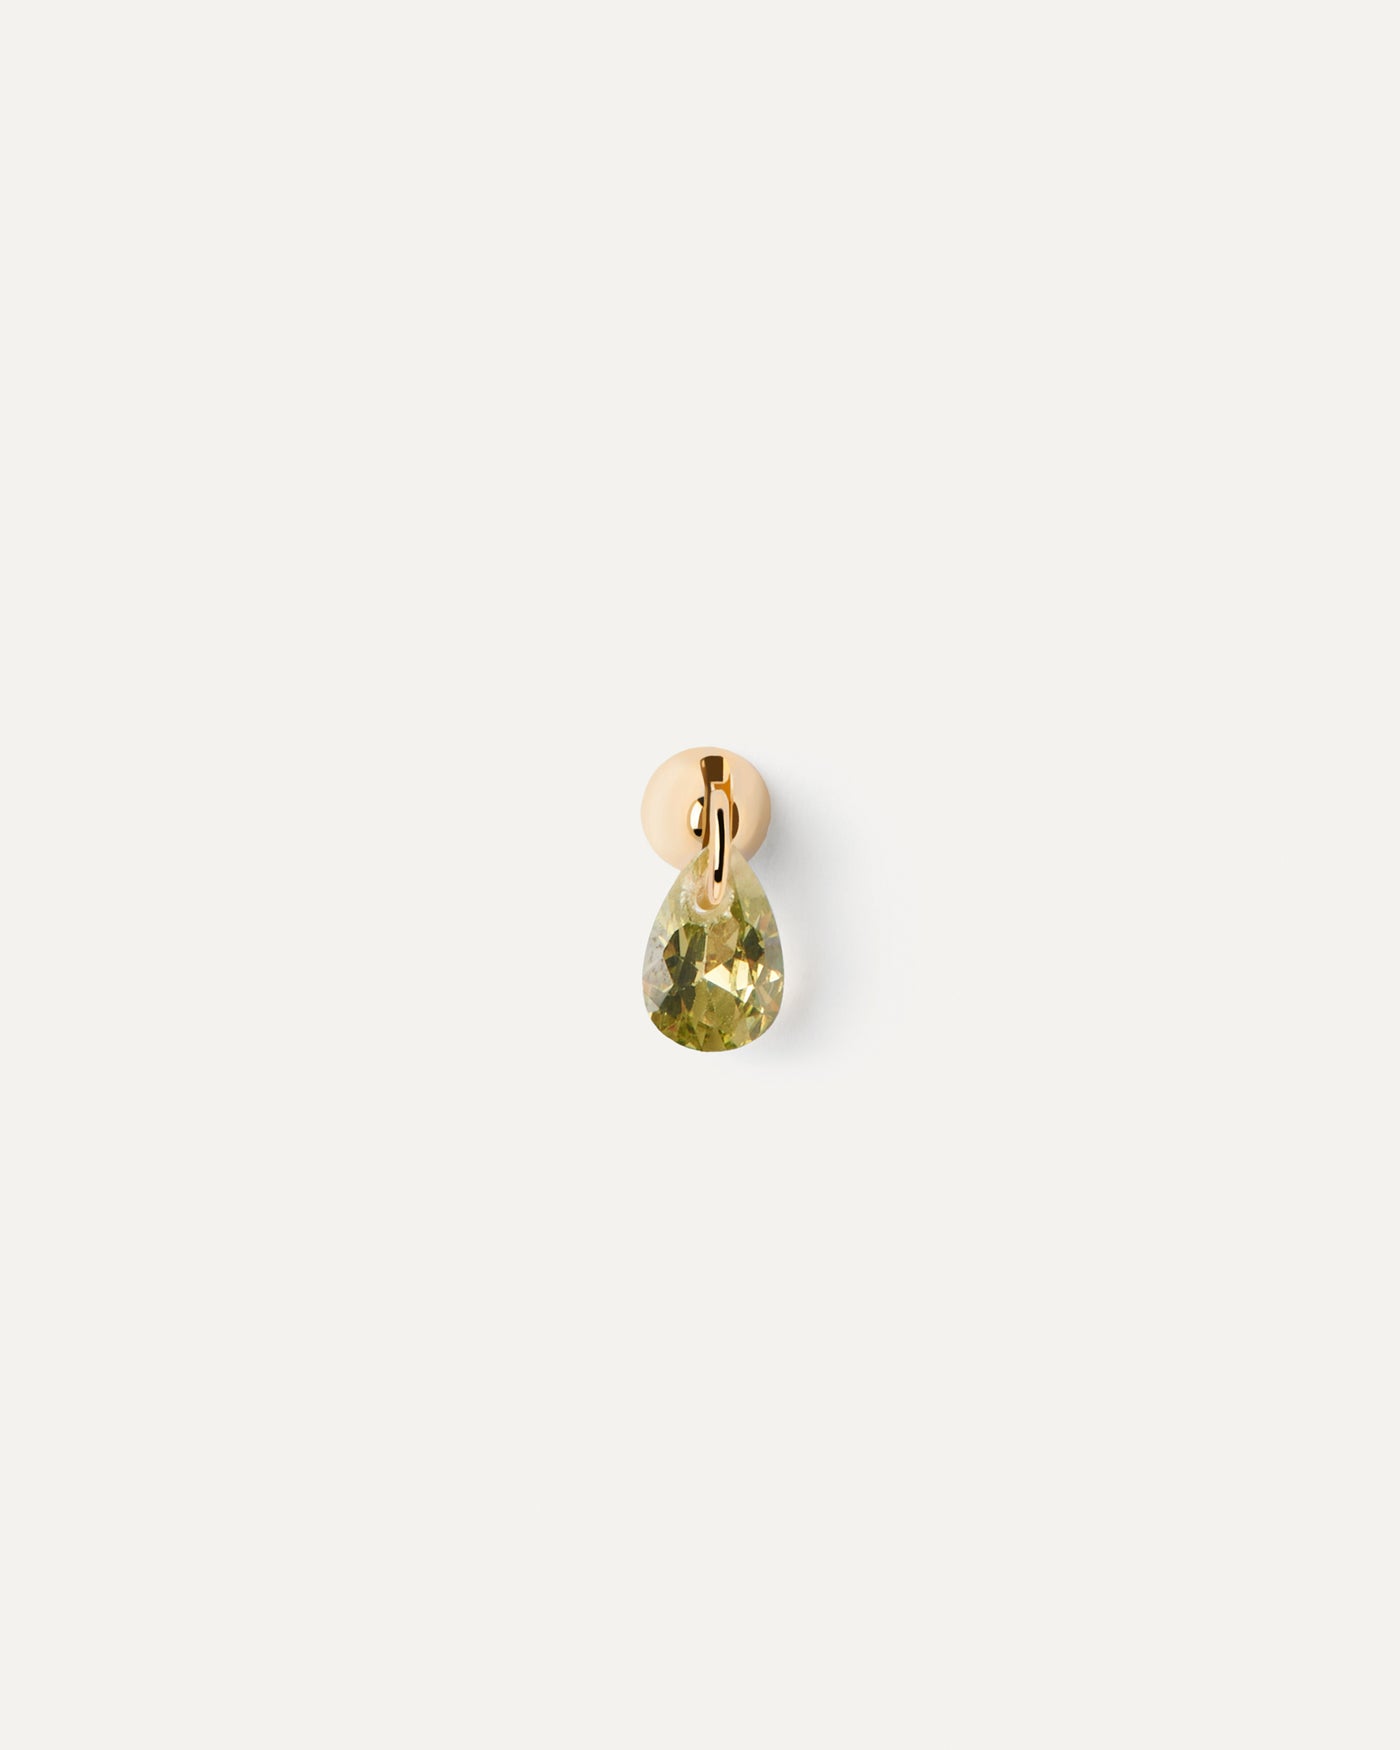 Lily grüner einzelner ohrring. Vergoldeter einzelner Ohrstecker mit Tropfenanhänger aus grüner zirkonia. Erhalten Sie die neuesten Produkte von PDPAOLA. Geben Sie Ihre Bestellung sicher auf und erhalten Sie diesen Bestseller.